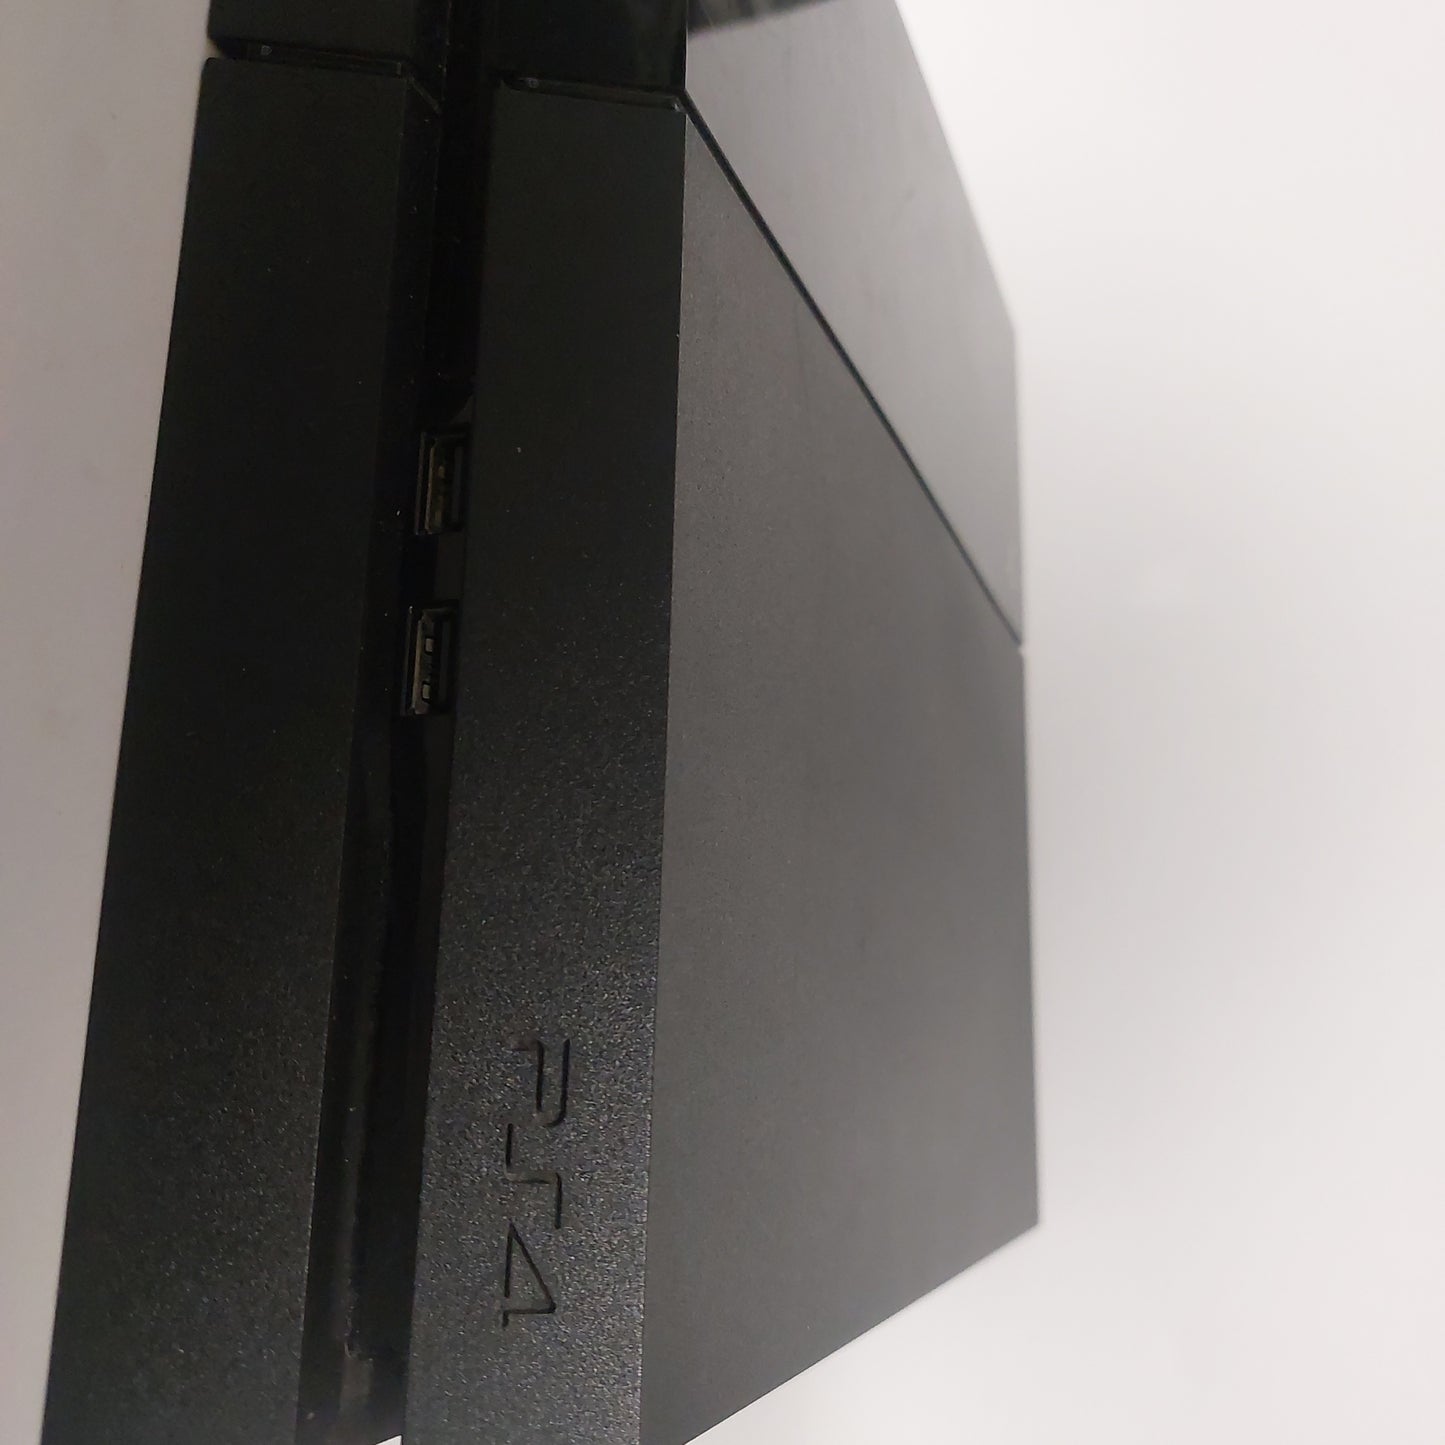 Playstation 4 500 GB (nur Konsole)